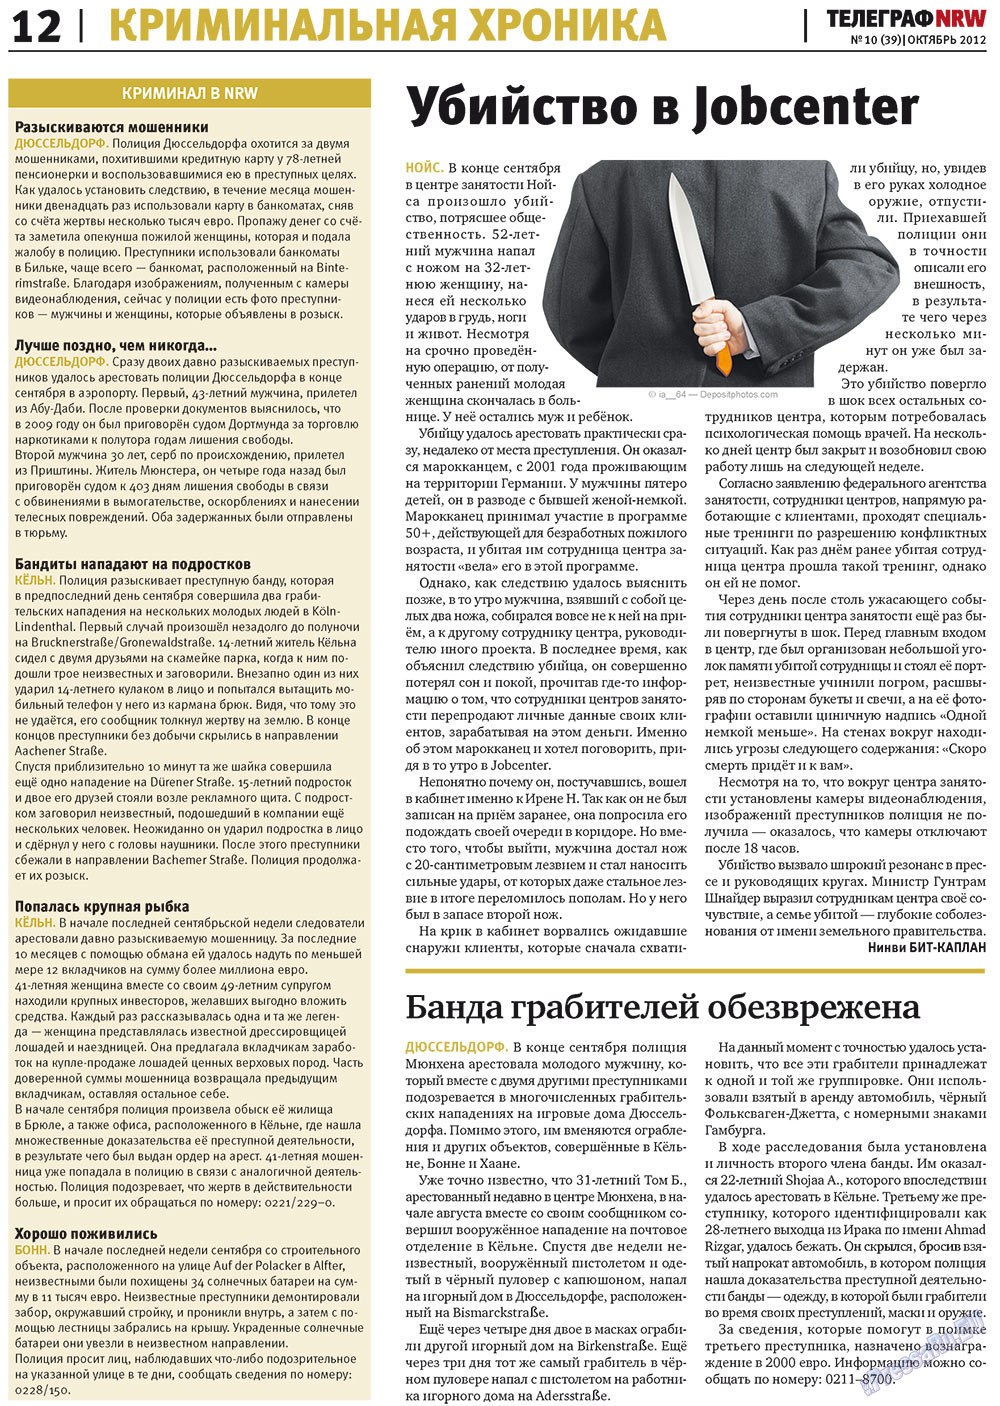 Телеграф NRW (газета). 2012 год, номер 10, стр. 12